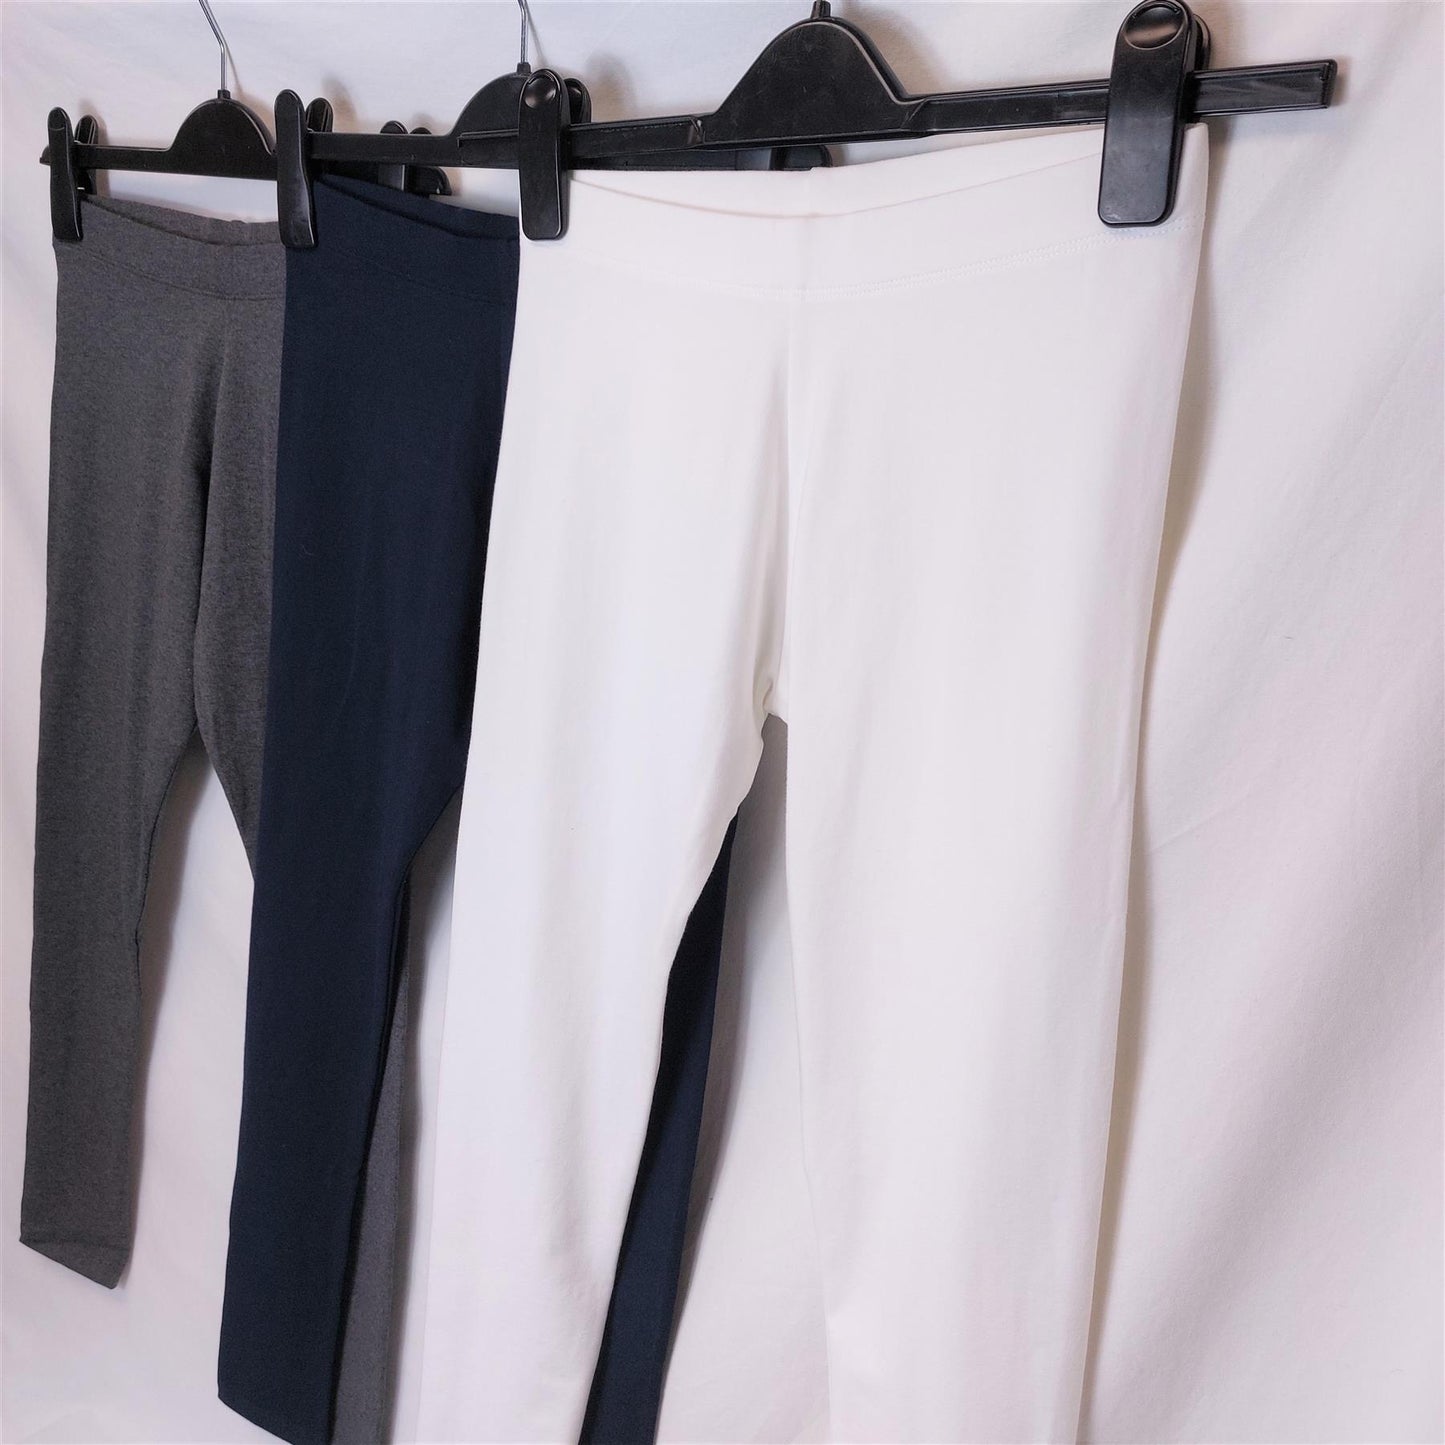 Girls' Leggings High Street Brand Cotton Rich Bargain Multibuy Available